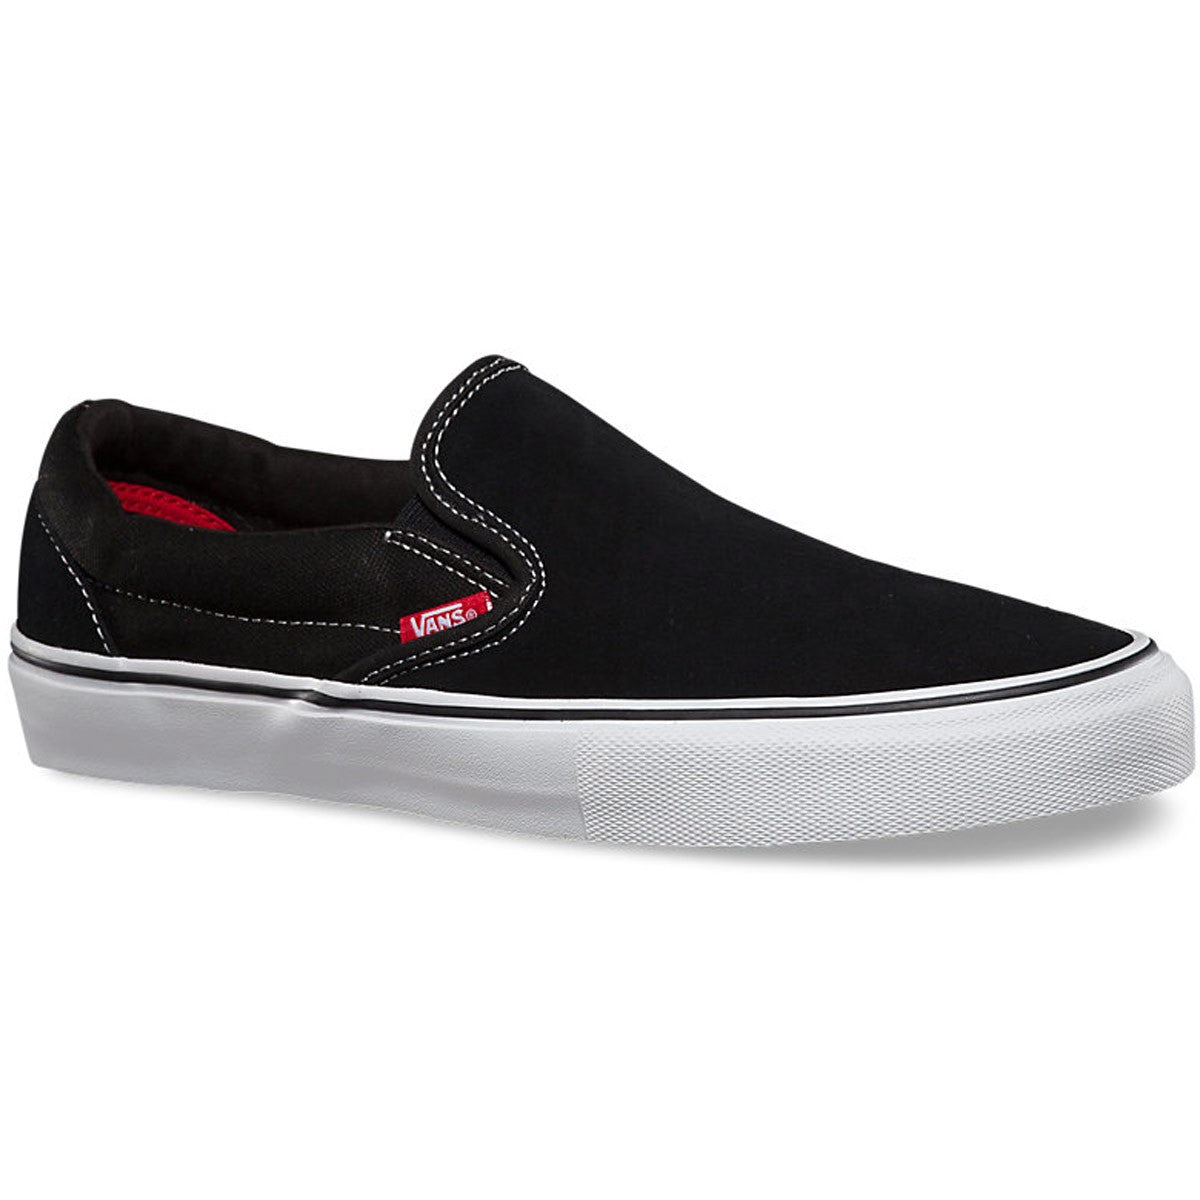 Vans Pro Black/White Skate Shoe Red – Whiteroom Snow